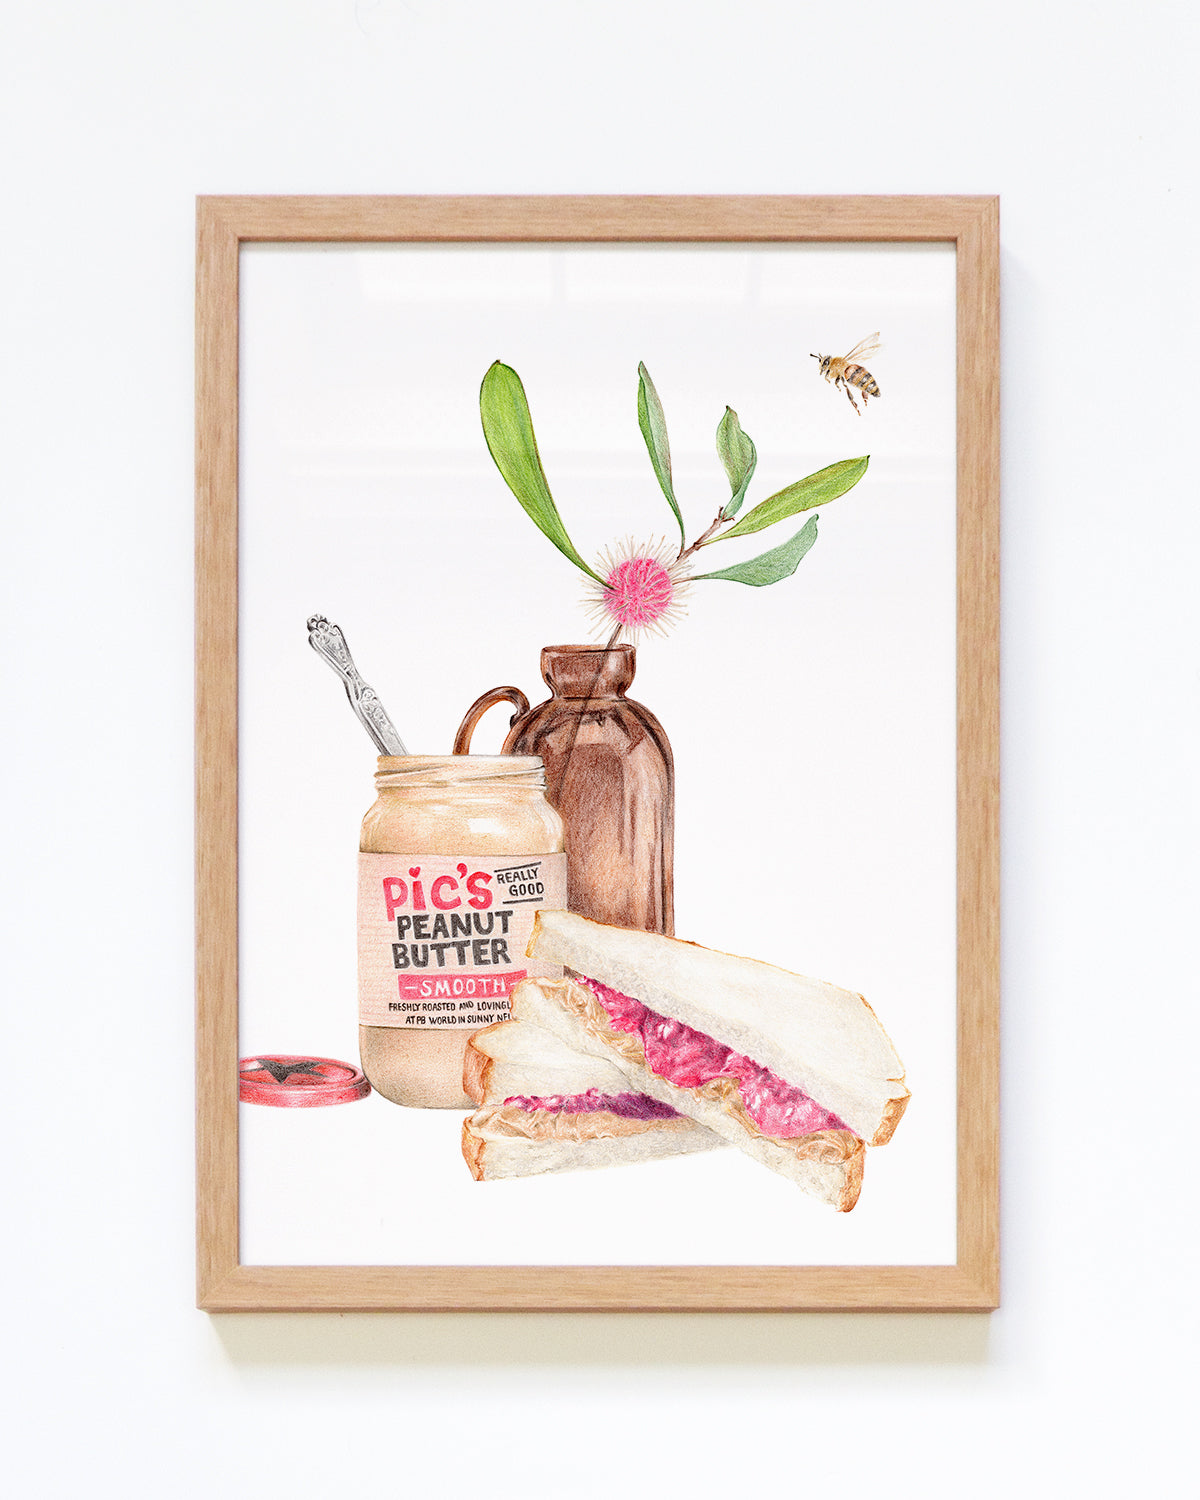 Framed peanut butter and jam sandwich kitchen art